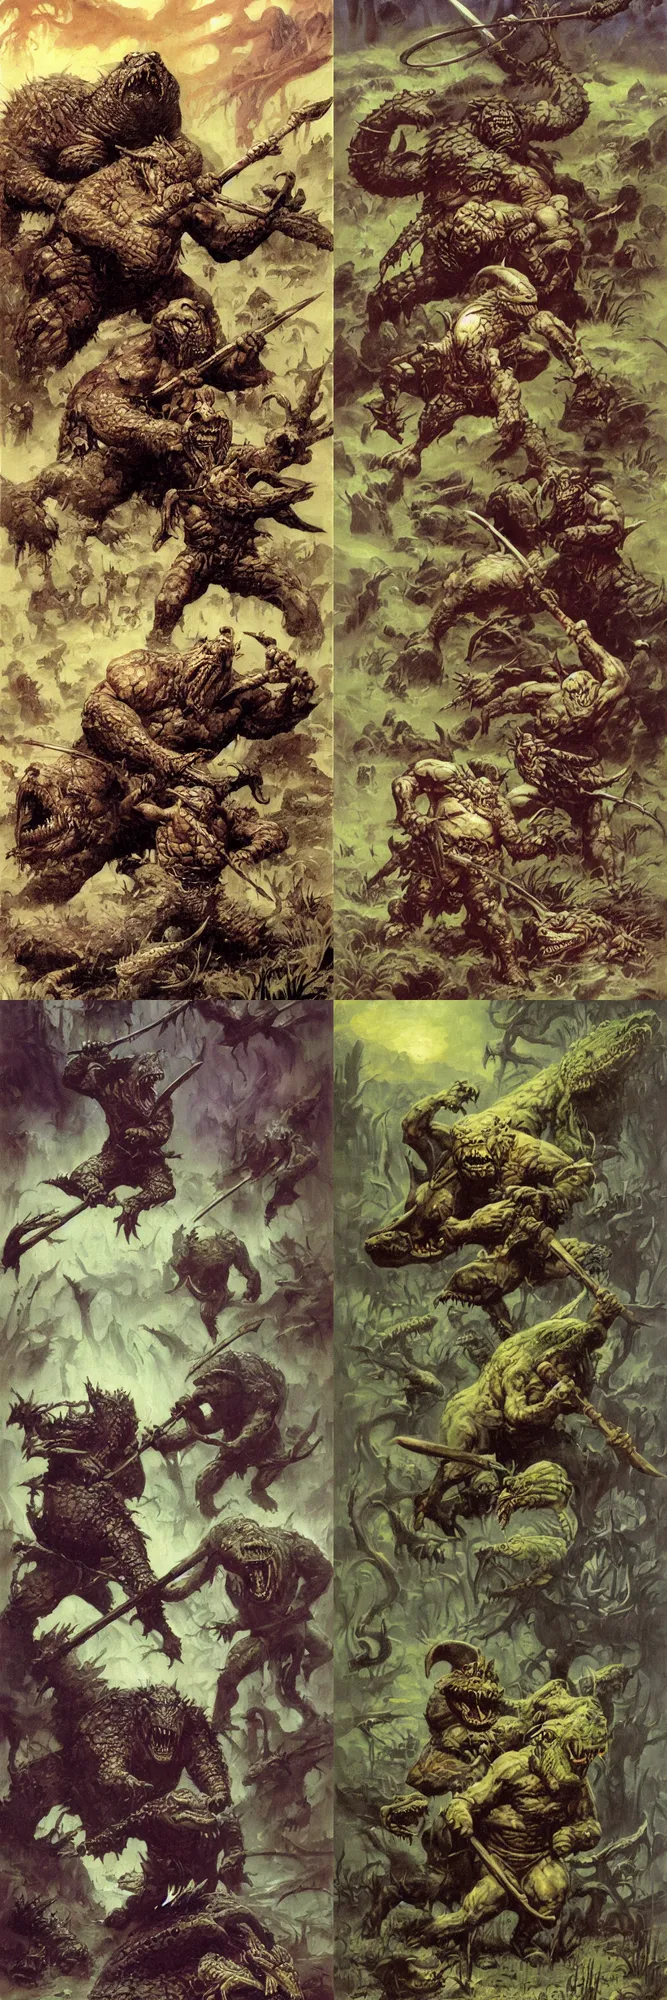 Prompt: dwarf with battle axe fights the alligator demon in misty swamp, illustration painting, frank frazetta daarken